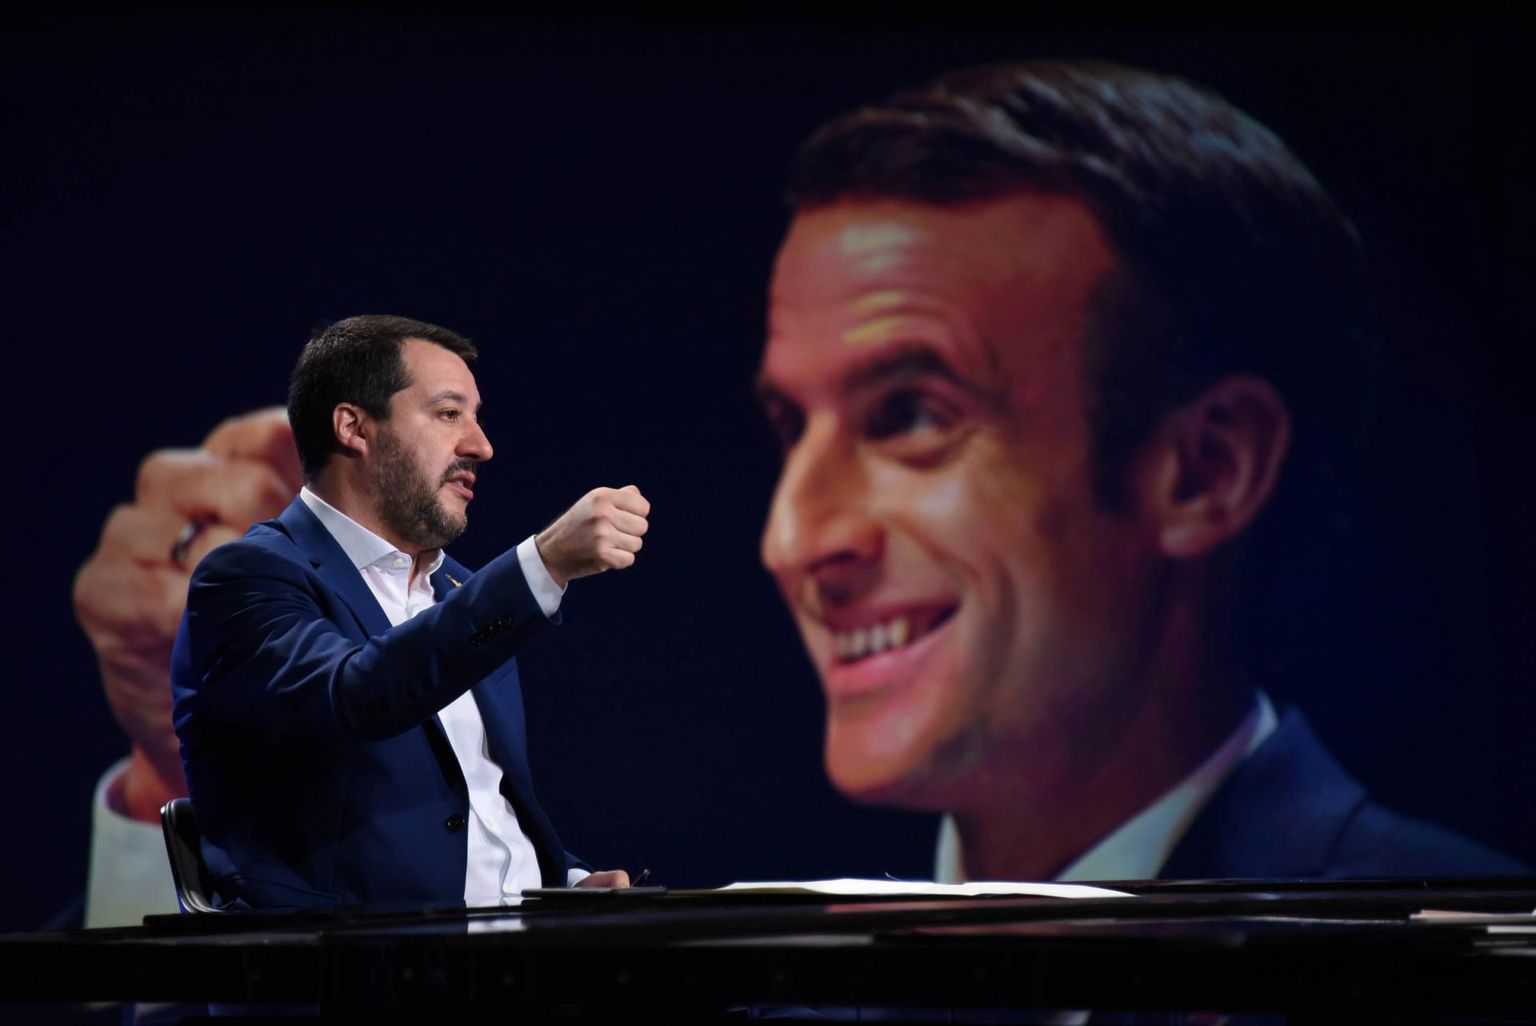 Itaalia siseminister Matteo Salvini (vasakul) televisioonis esinemas. Taustal Prantsusmaa president Emmanuel Macron.